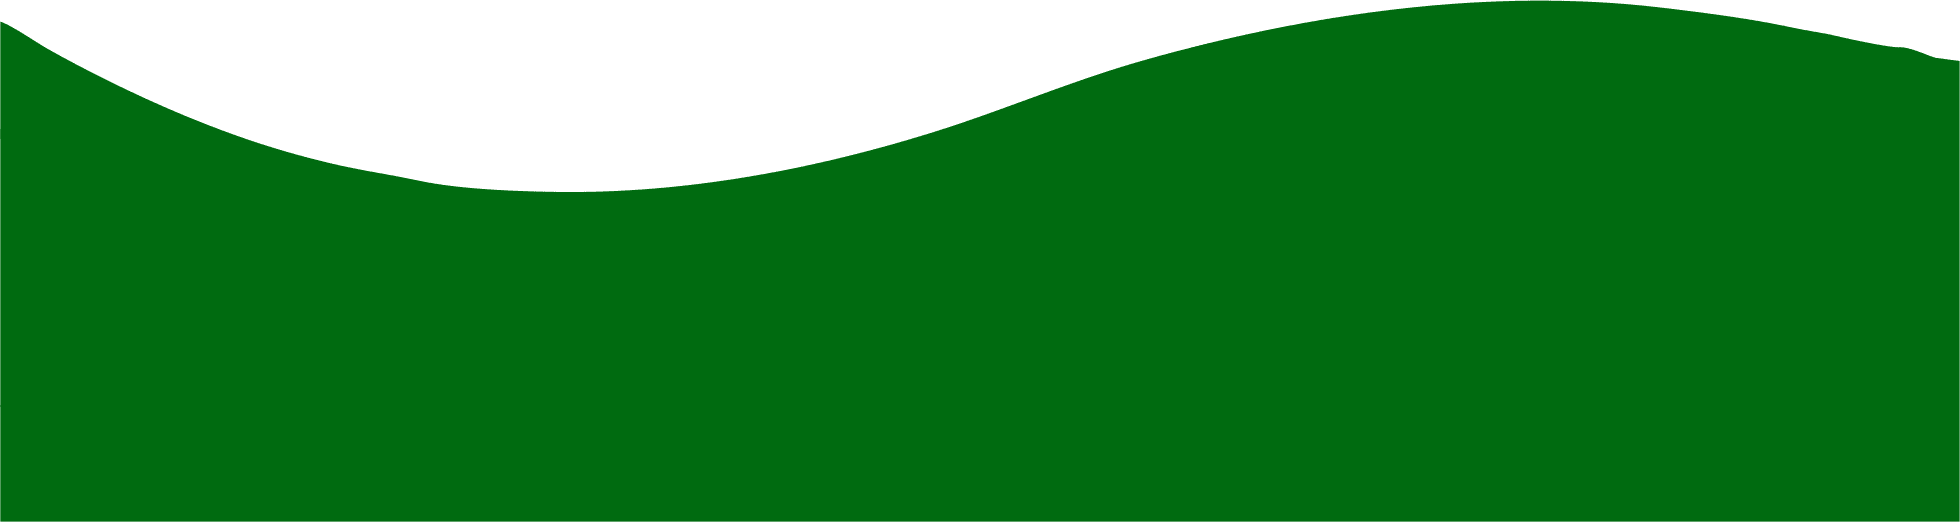 PNG verde